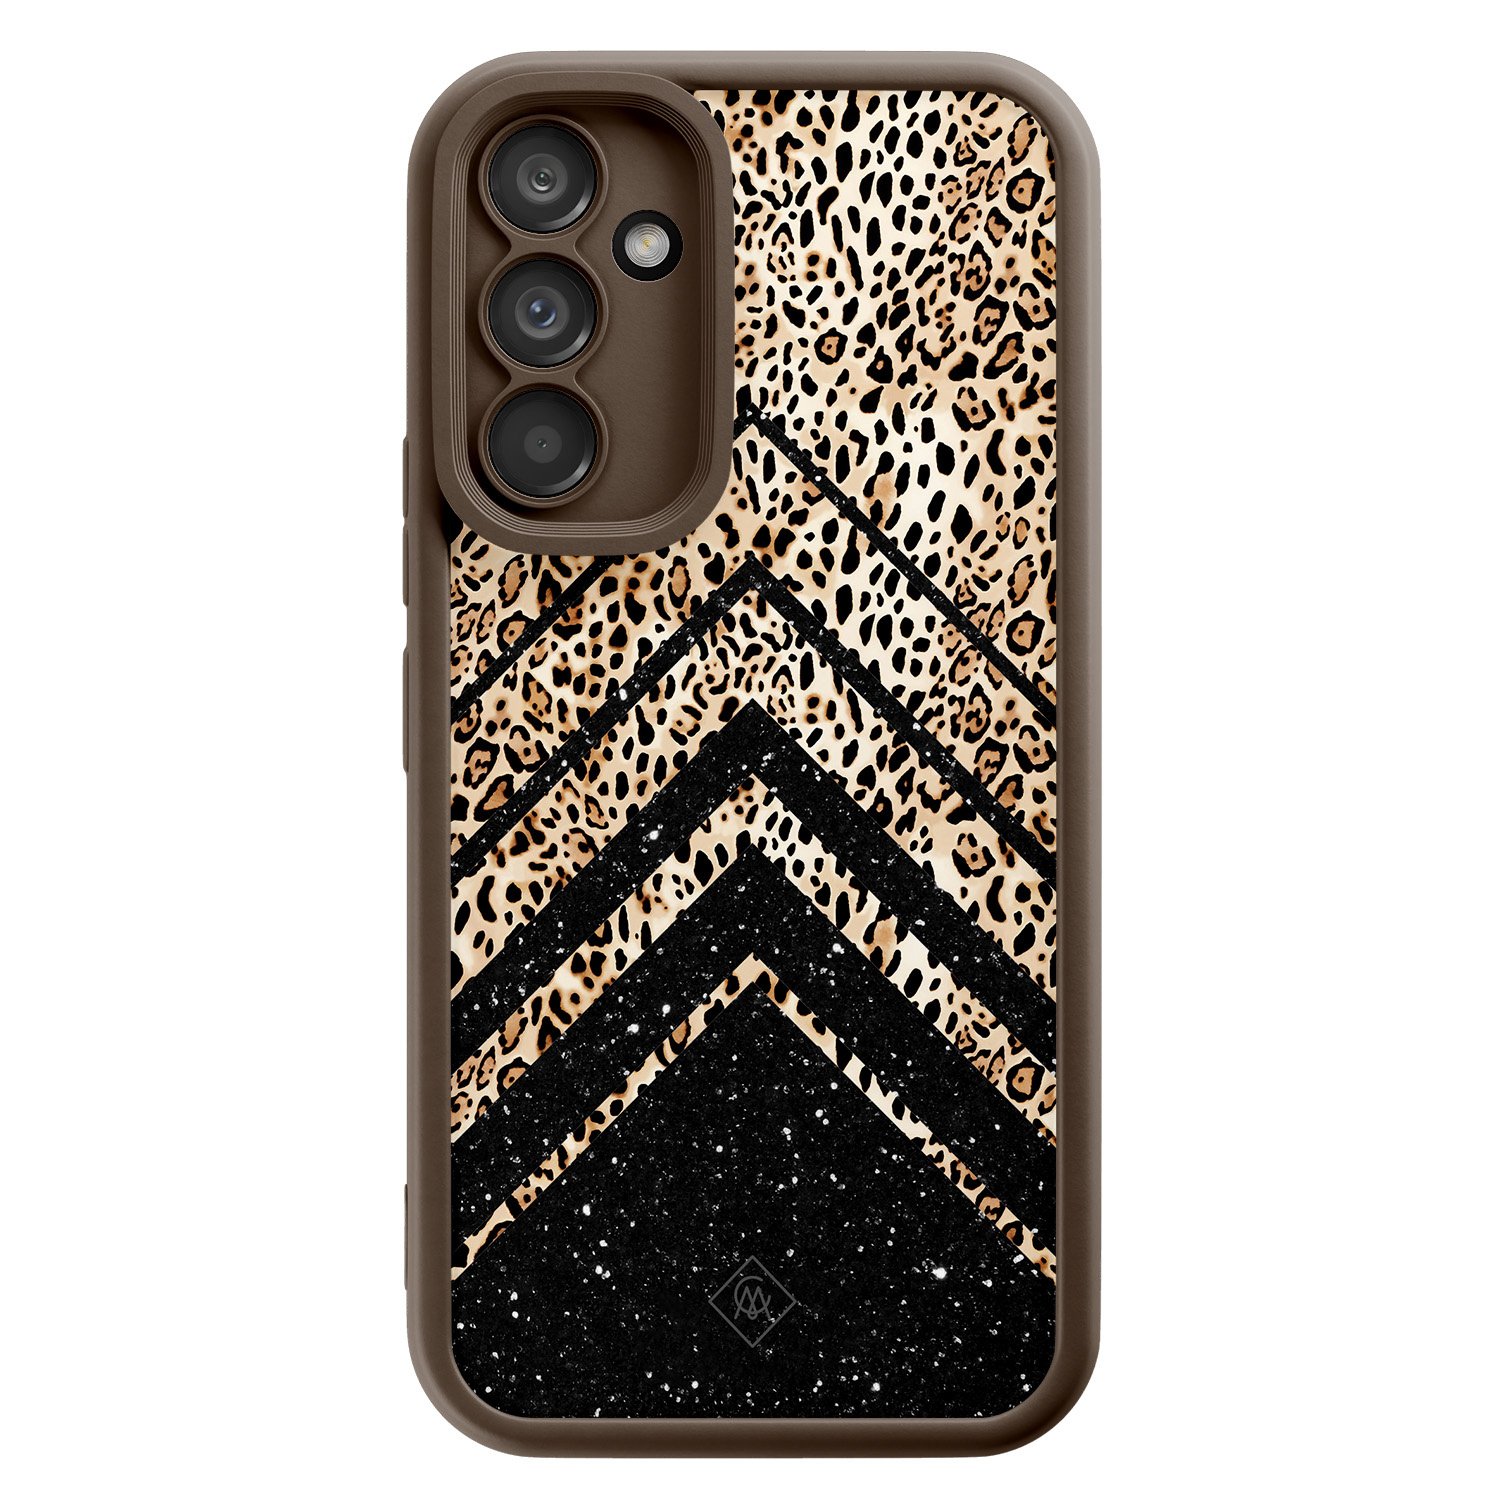 Samsung Galaxy A34 bruine case - Leopard abstract - Bruin/beige - Hard Case TPU Zwart - Luipaardprint - Casimoda